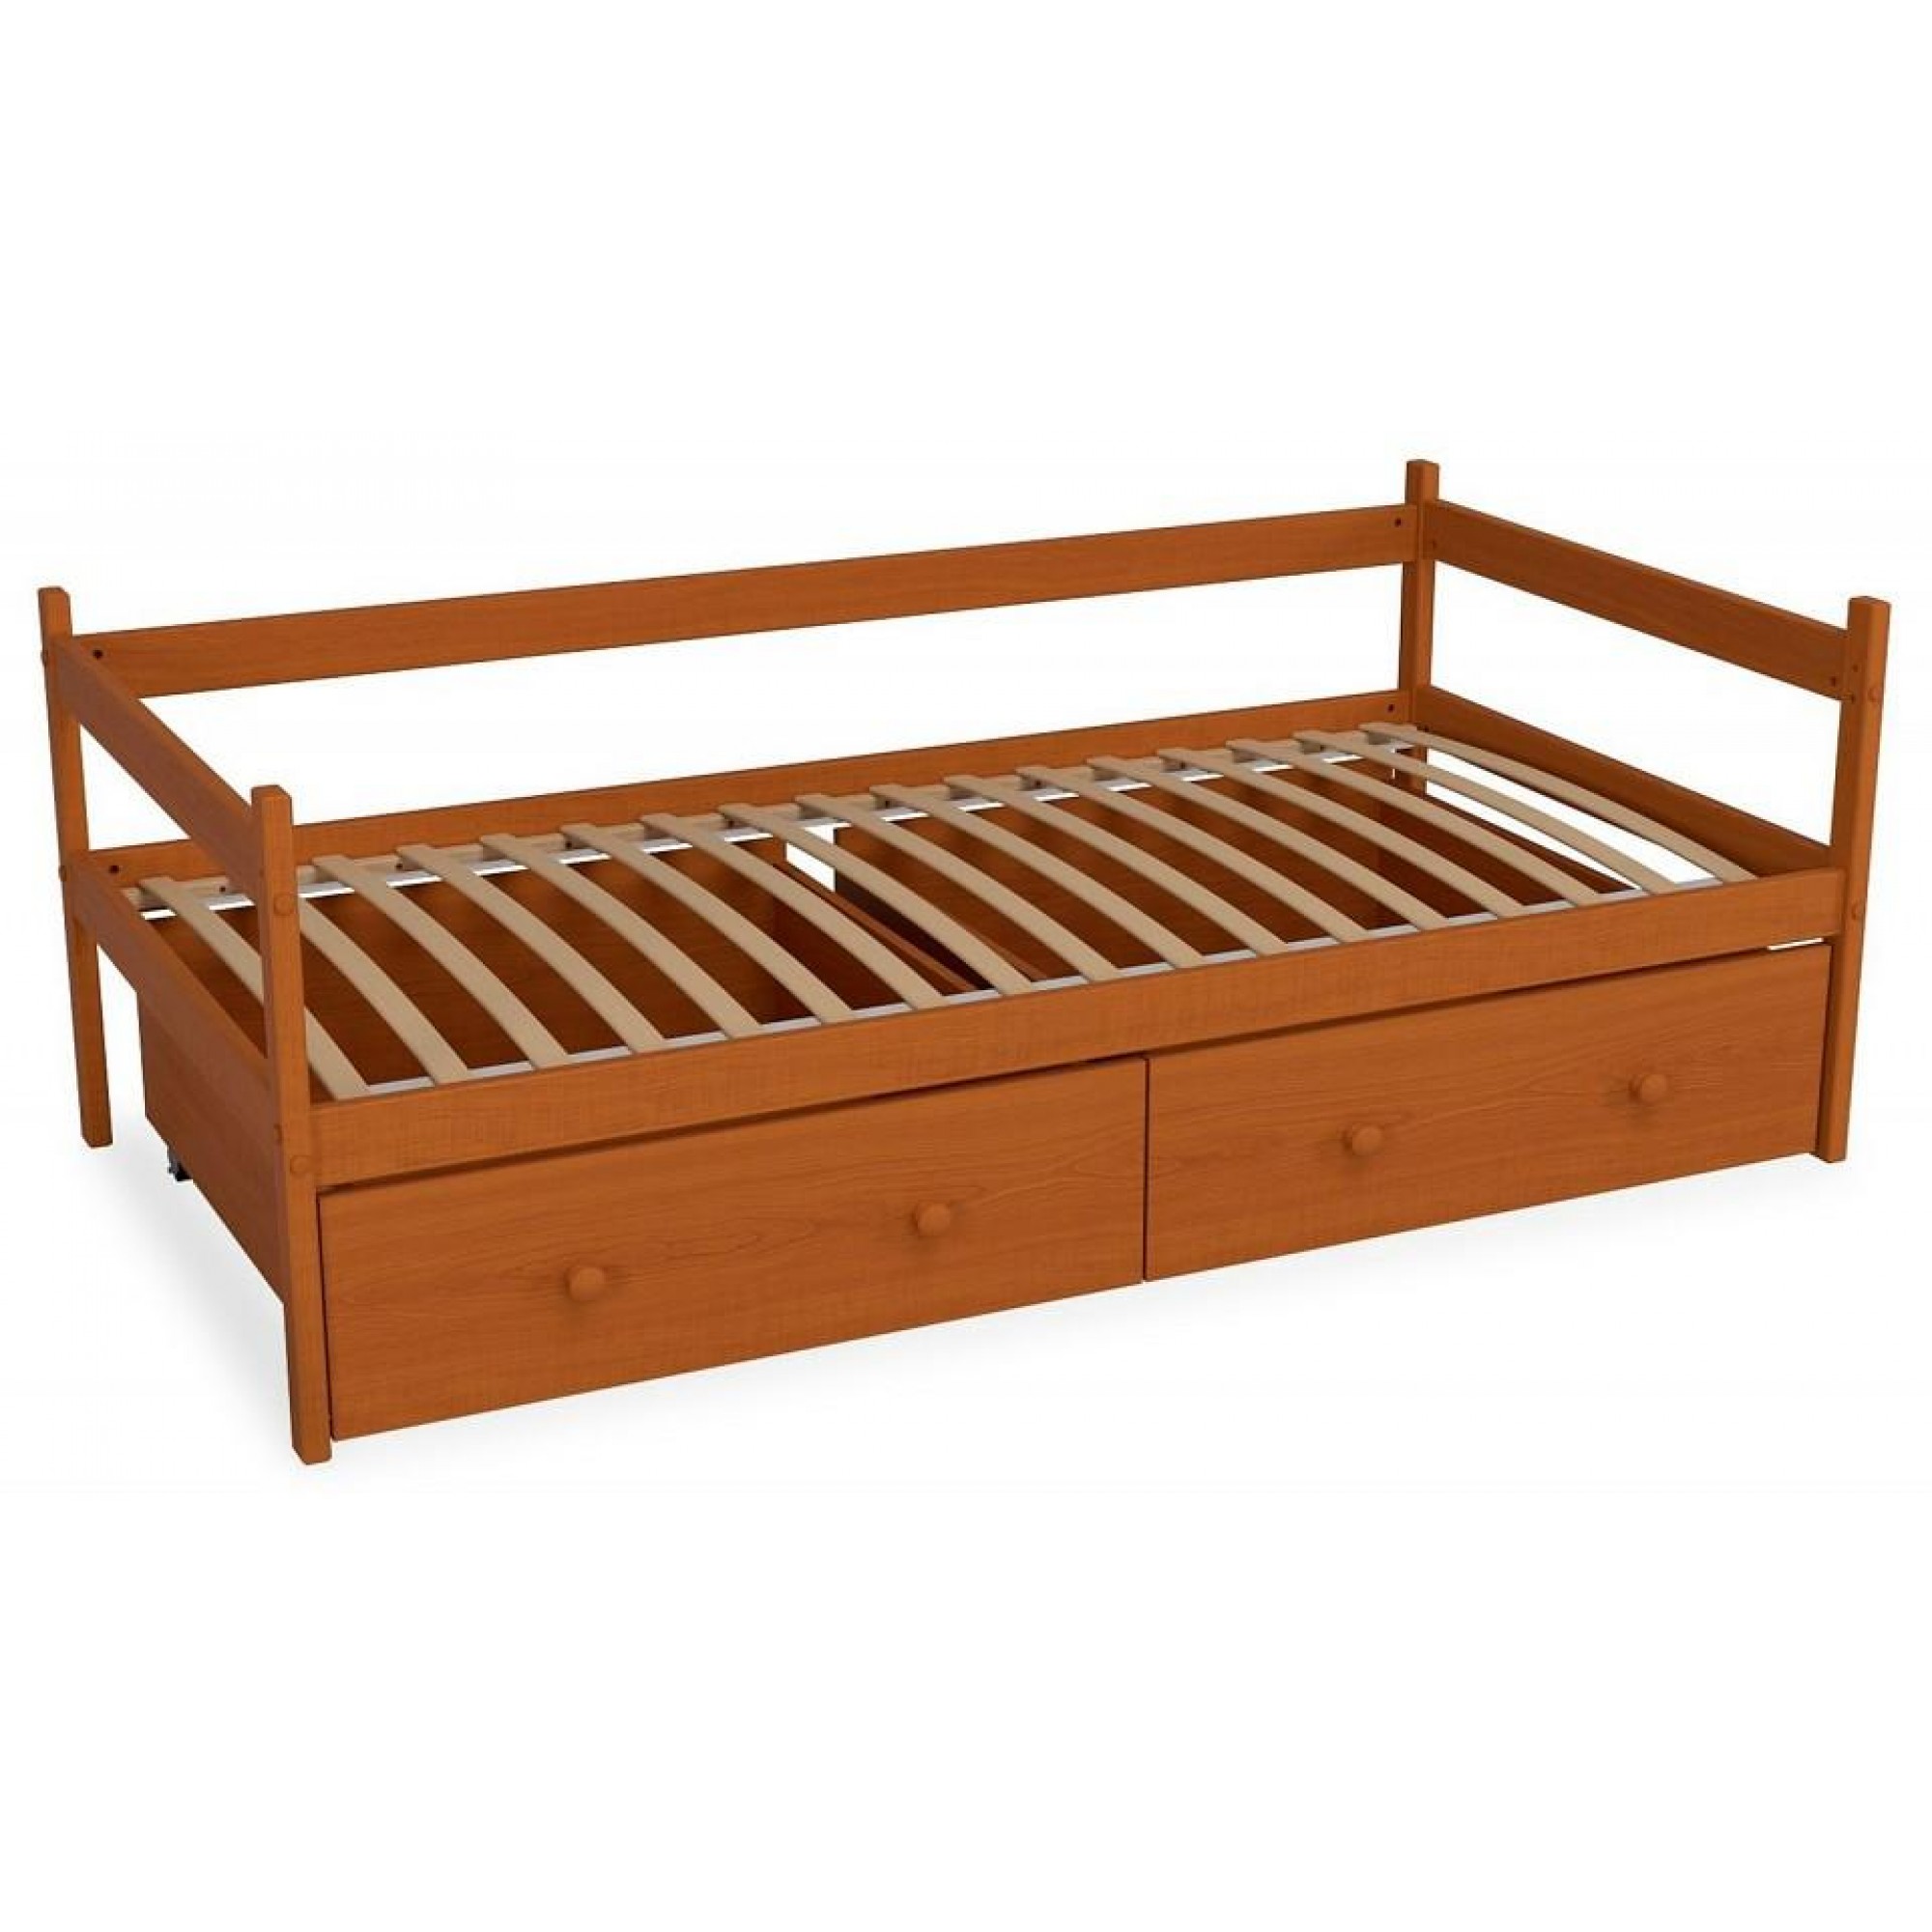 Кровать Р425 Э древесина коричневая нейтральная ольха 1660x870x600(MZG_405832)